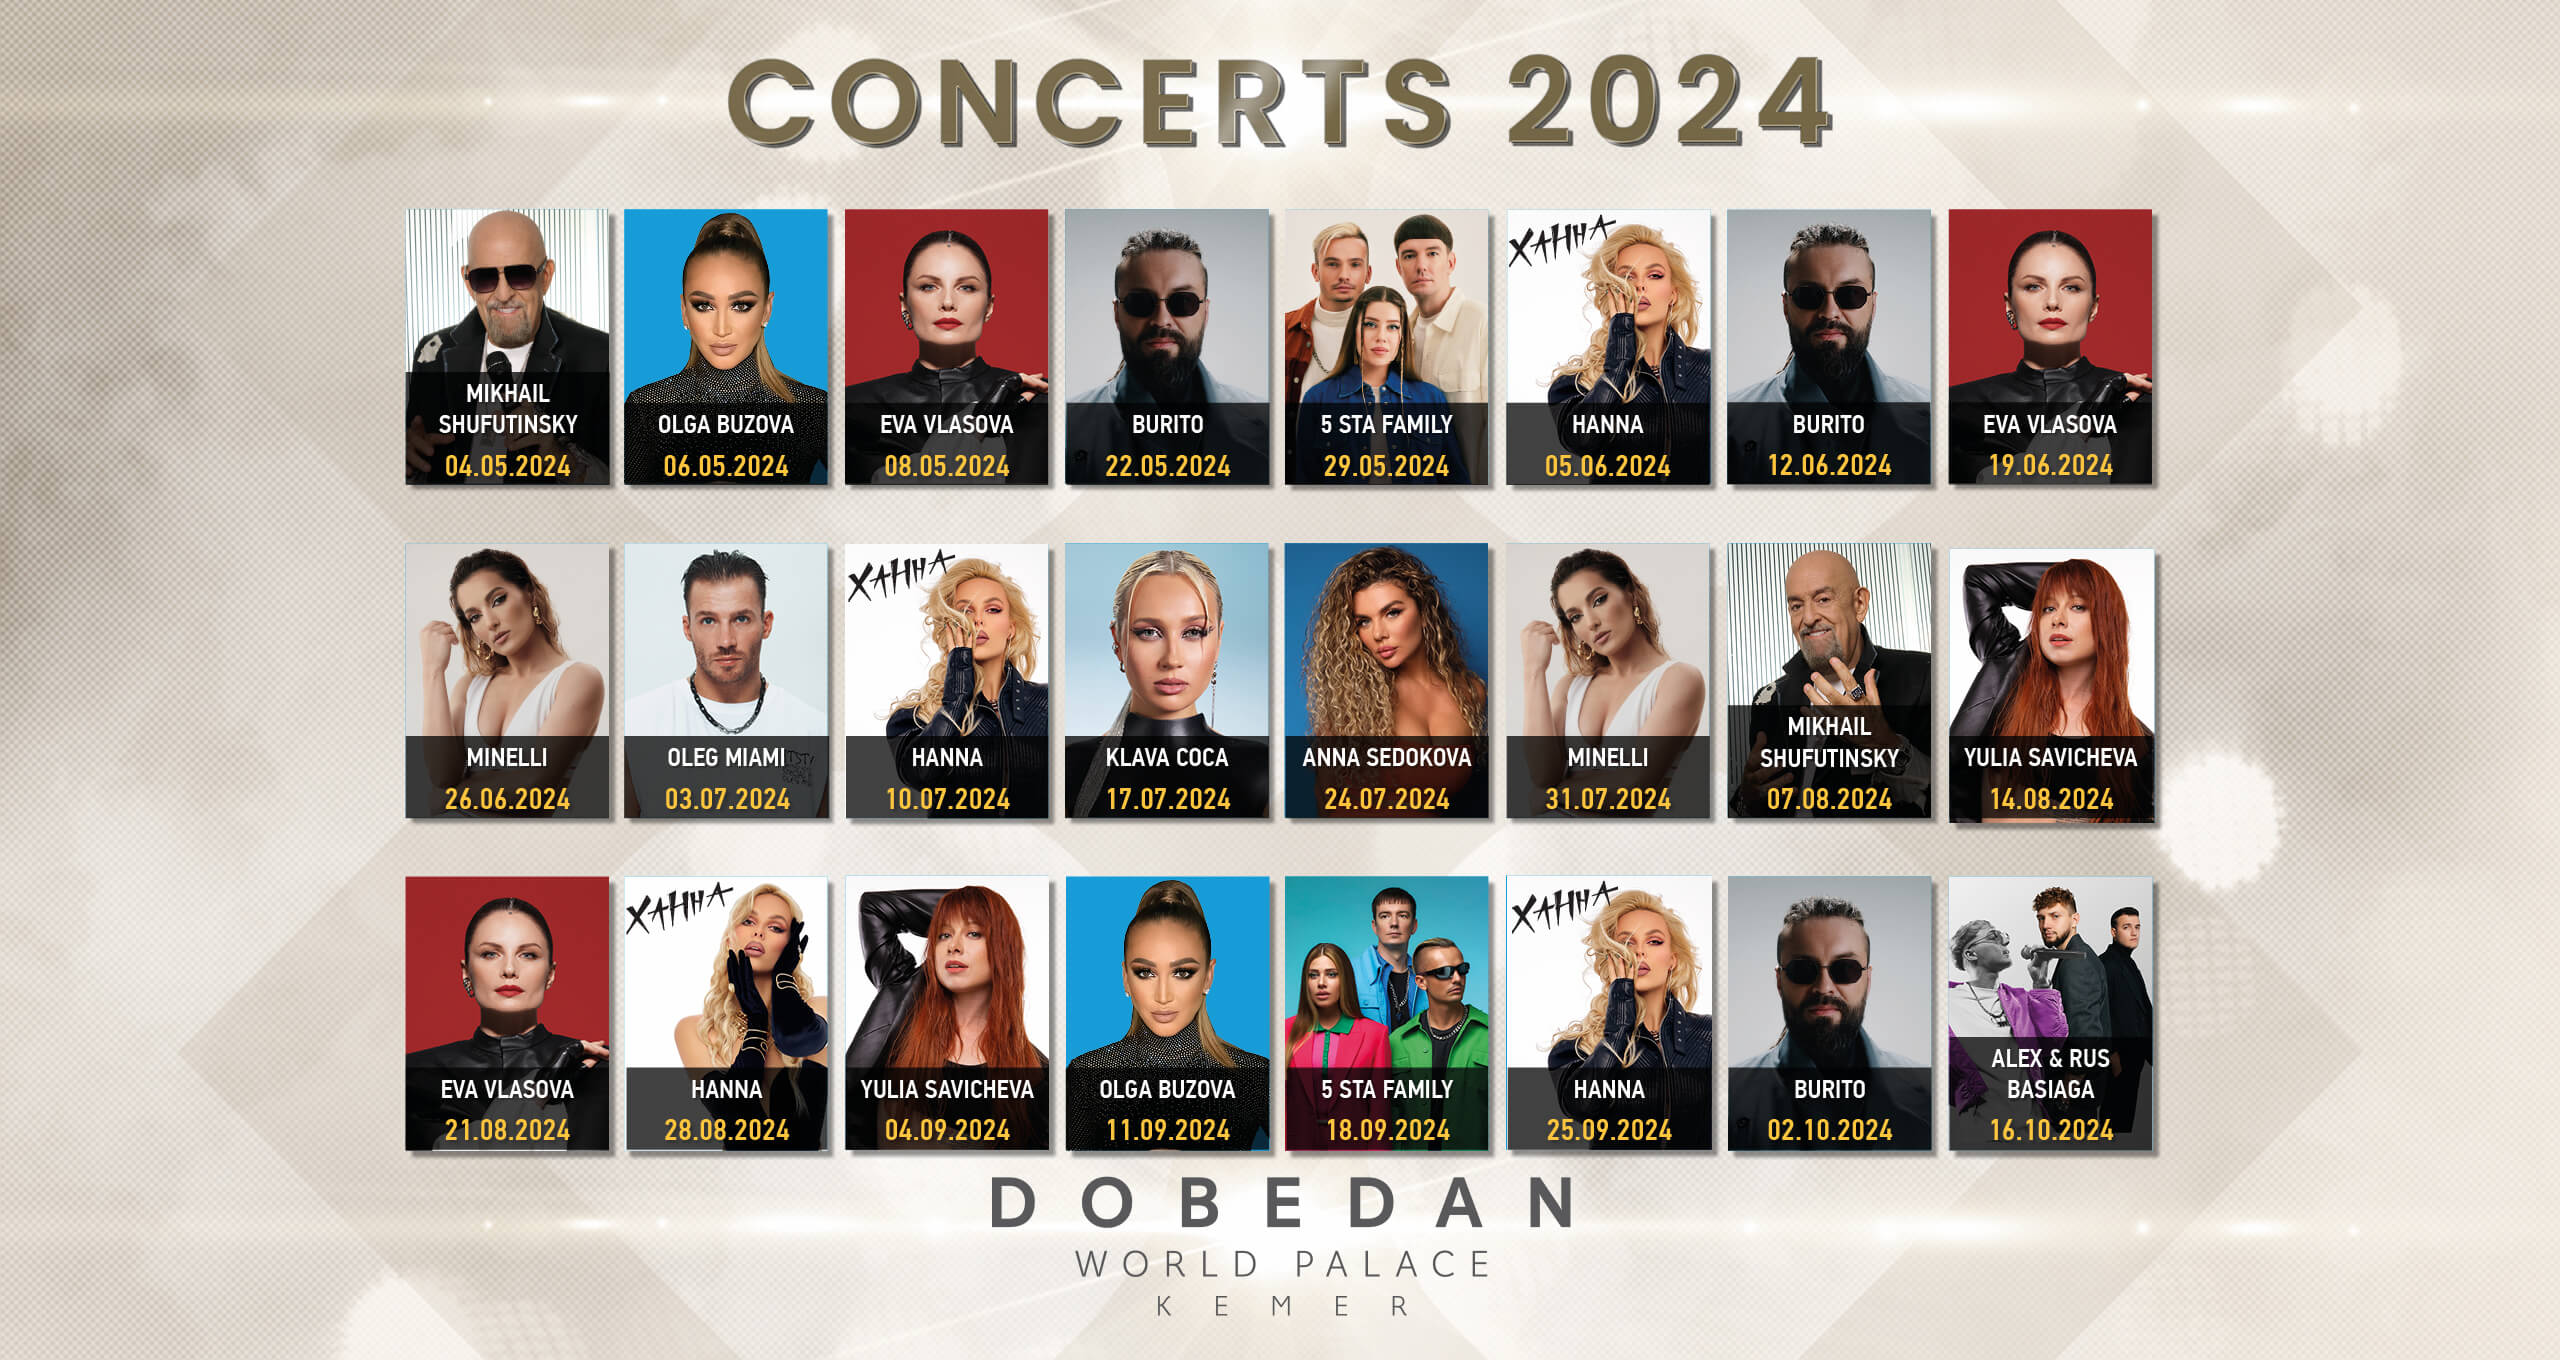 Dobedan World Palace Kemer Concerts 2024